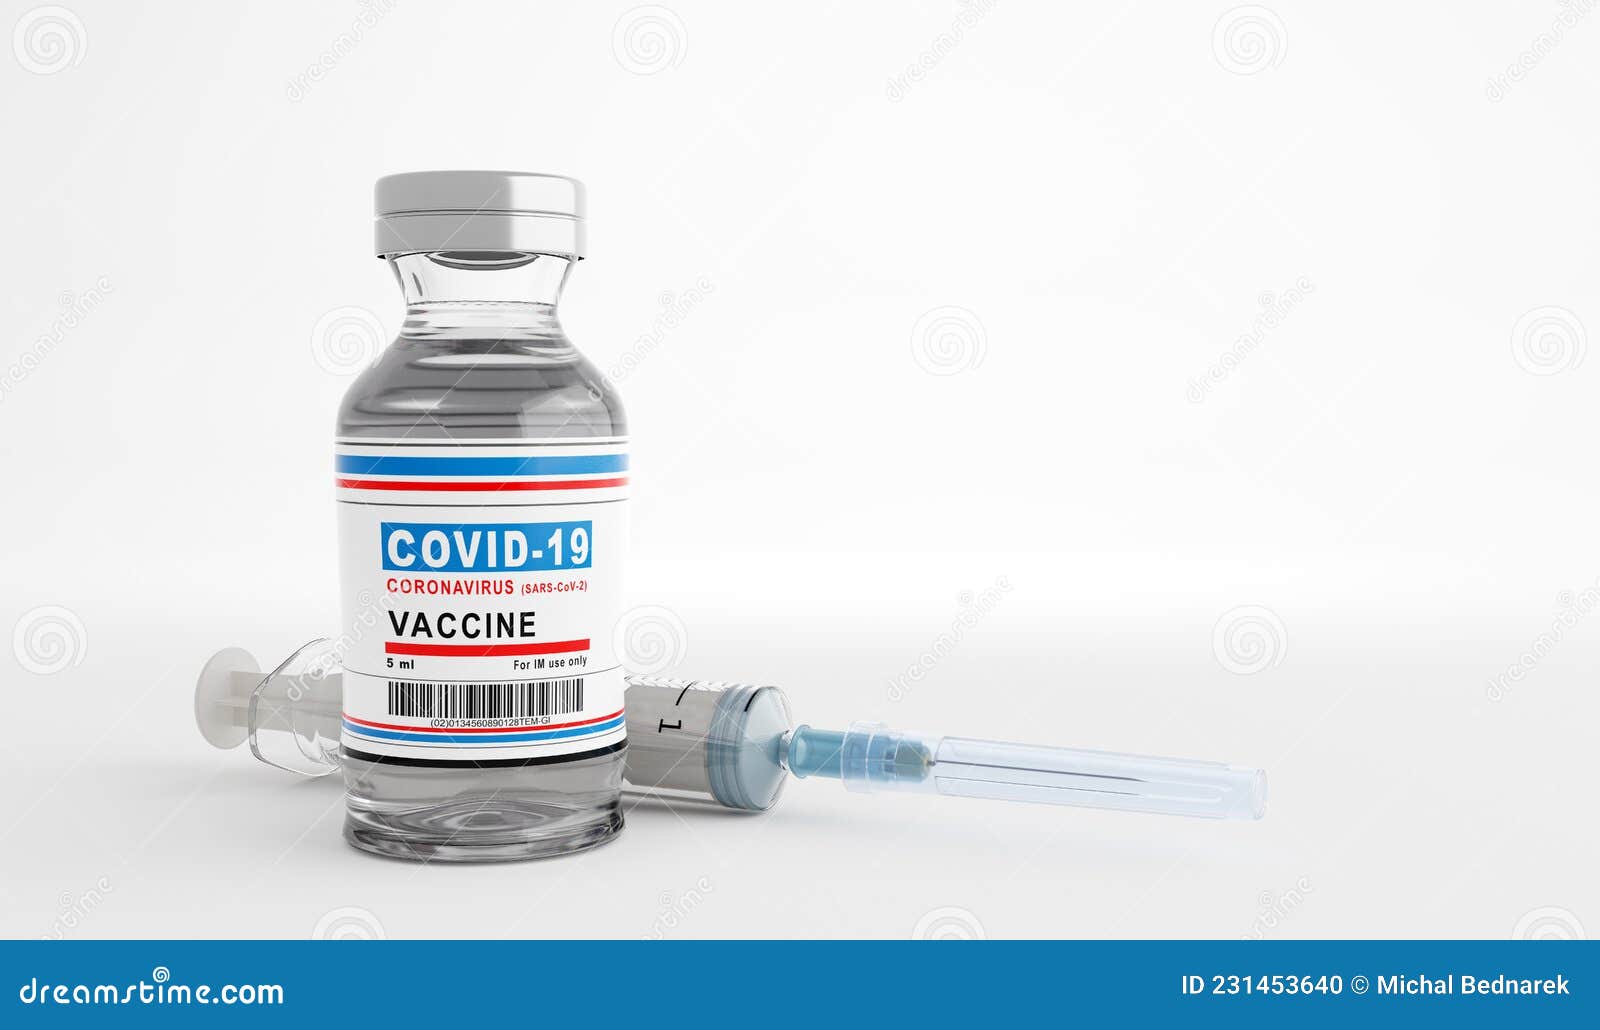 coronavirus covid-19 vaccine. covid19 research